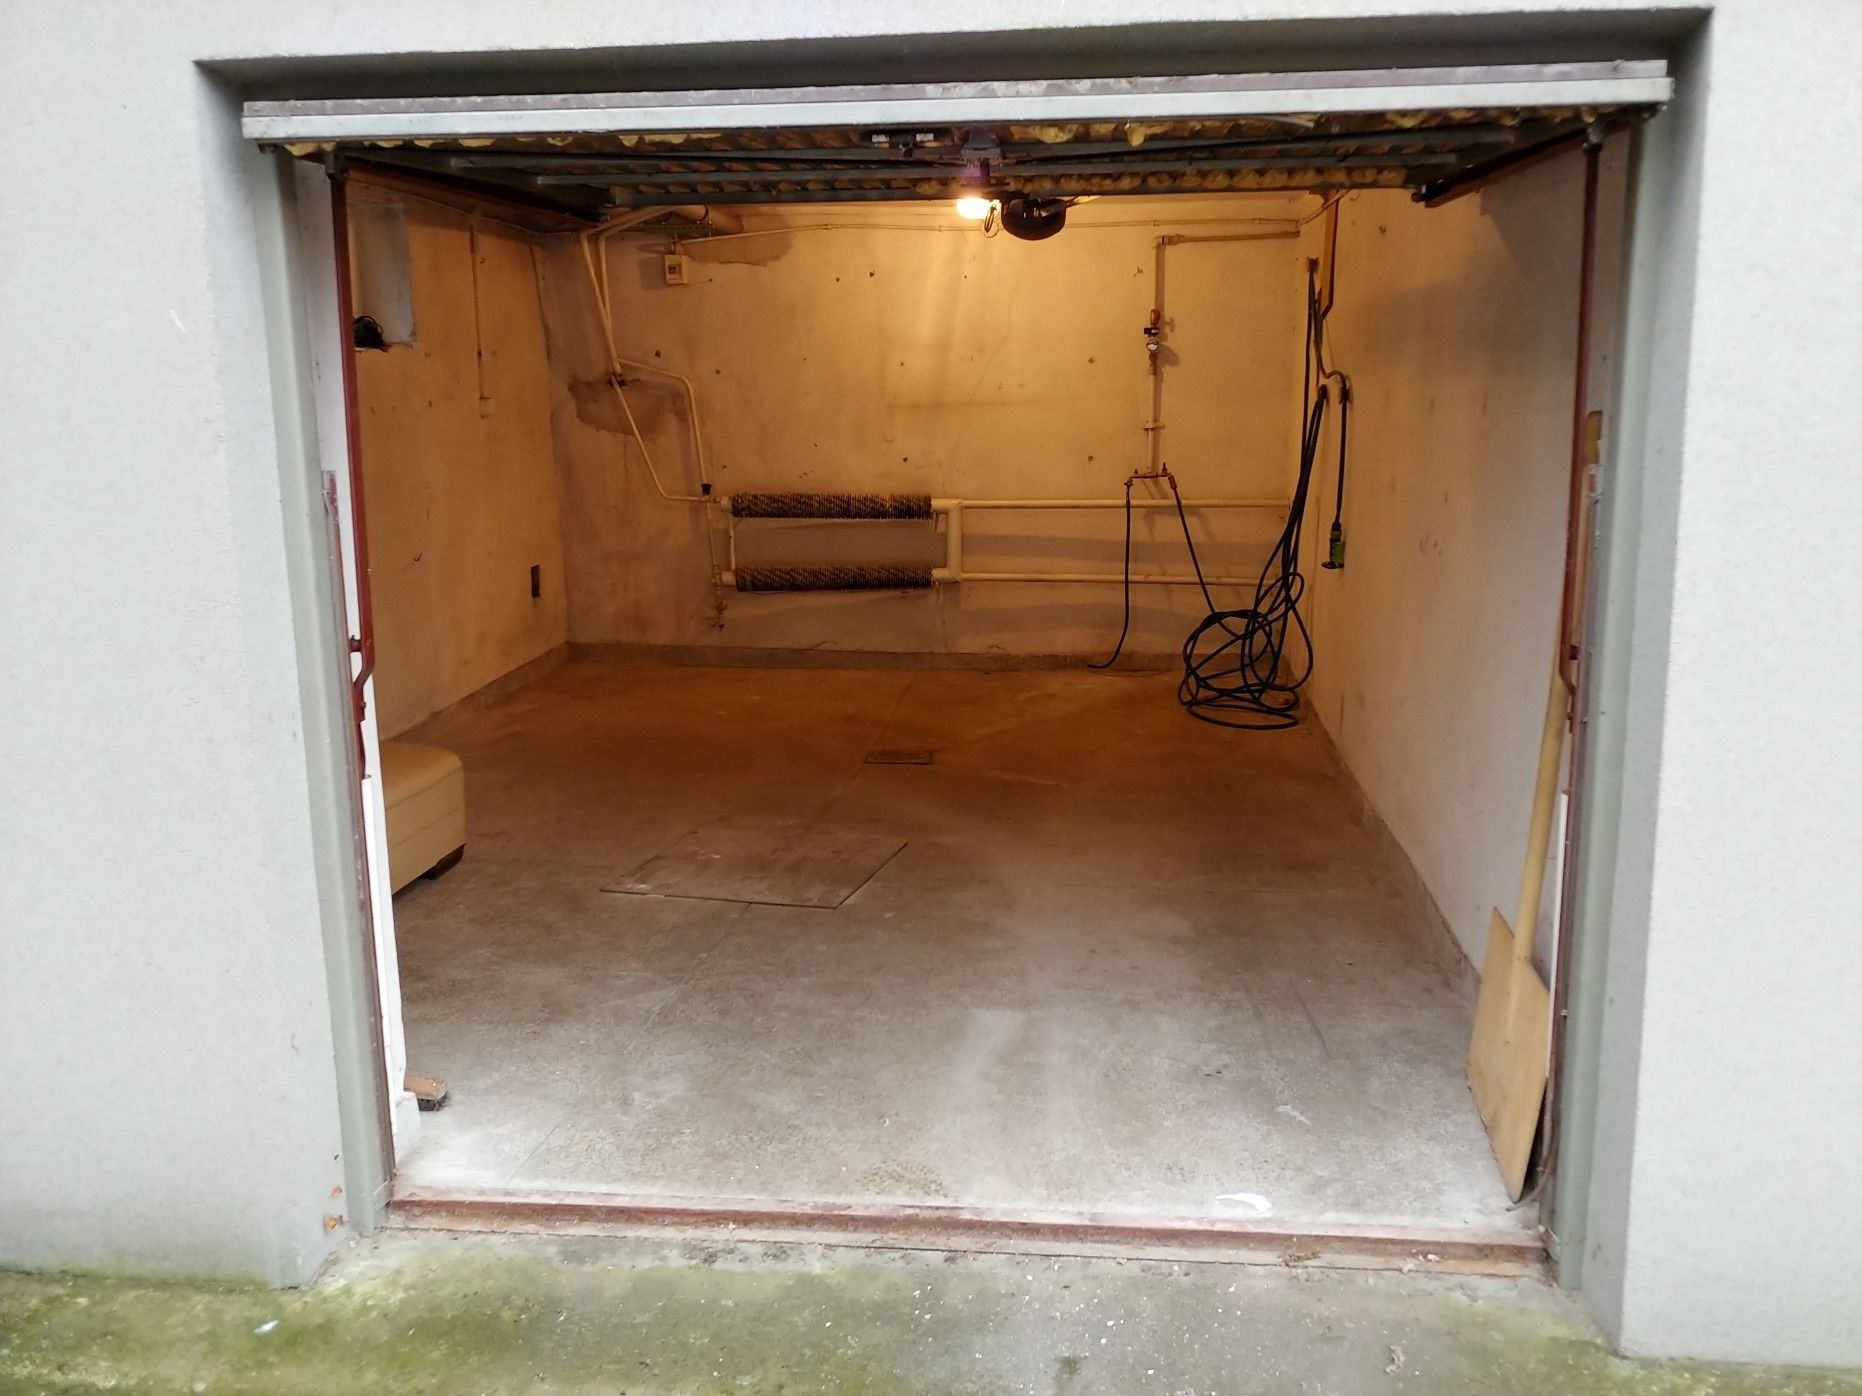 Magazyn Garaż murowany ogrzewany światło prąd Woronicza storage box